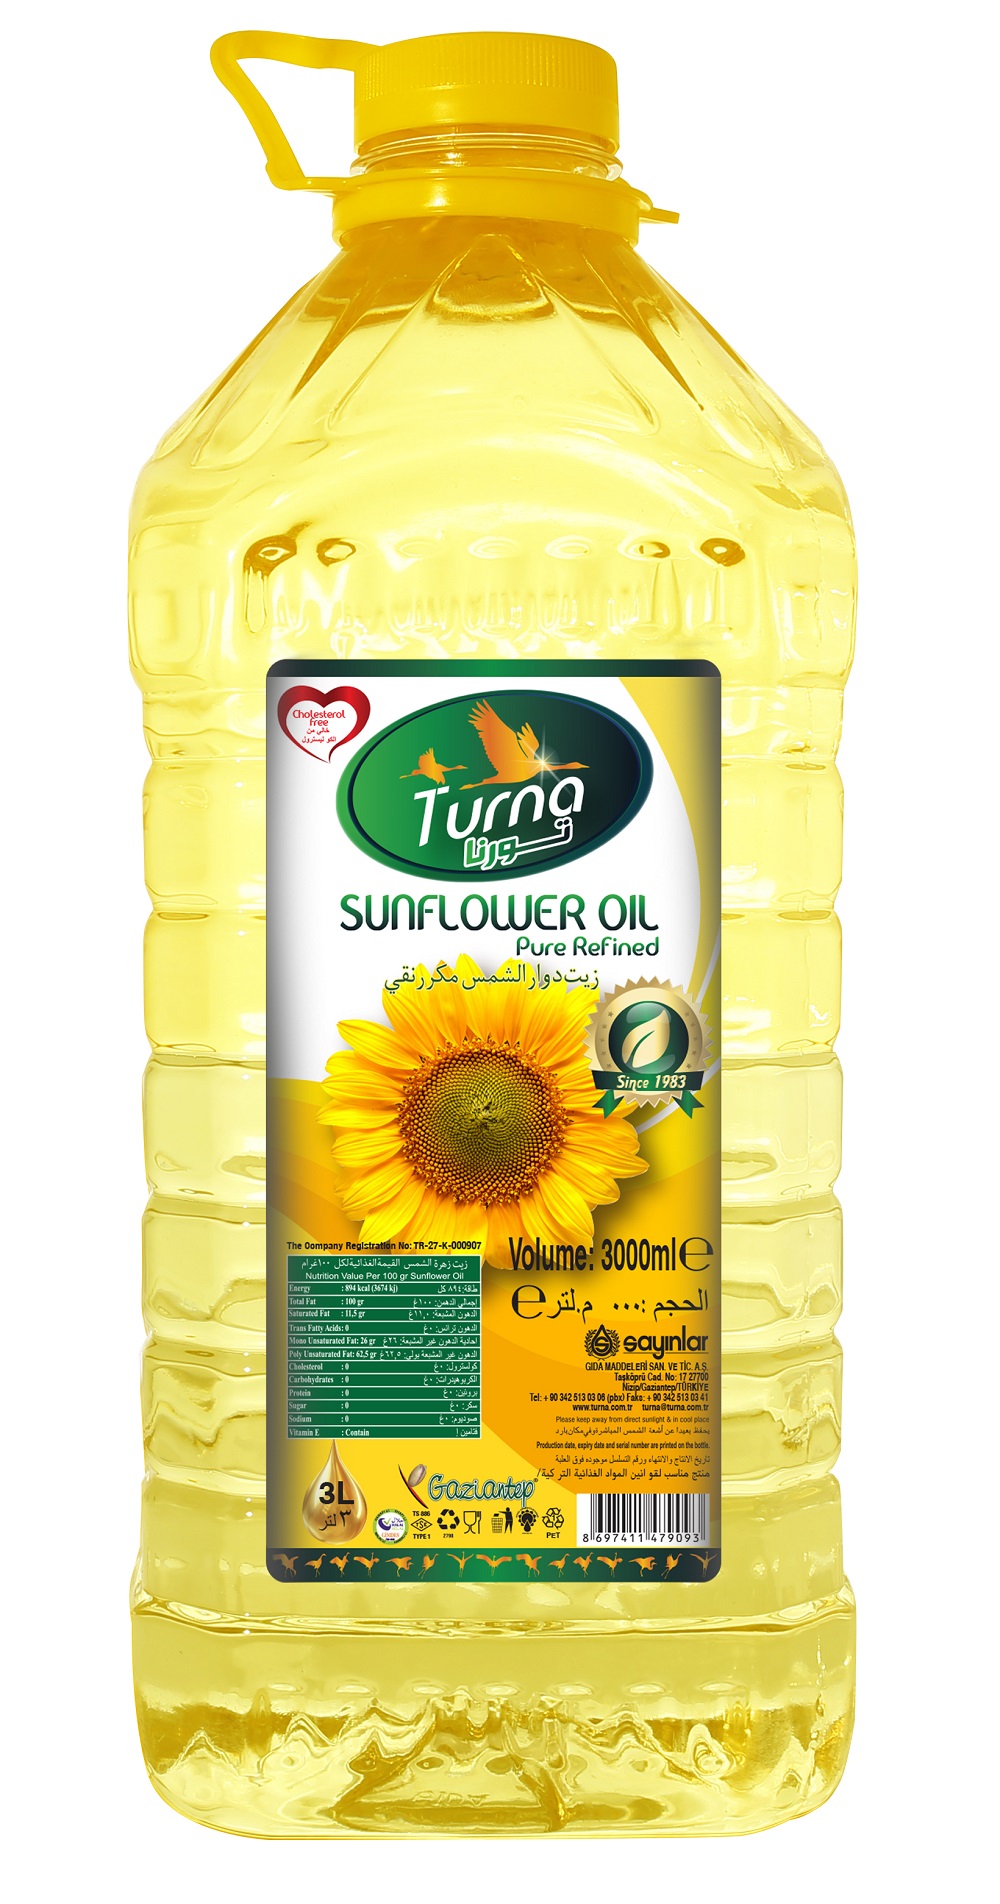 TURNA SUNFLOWER OIL